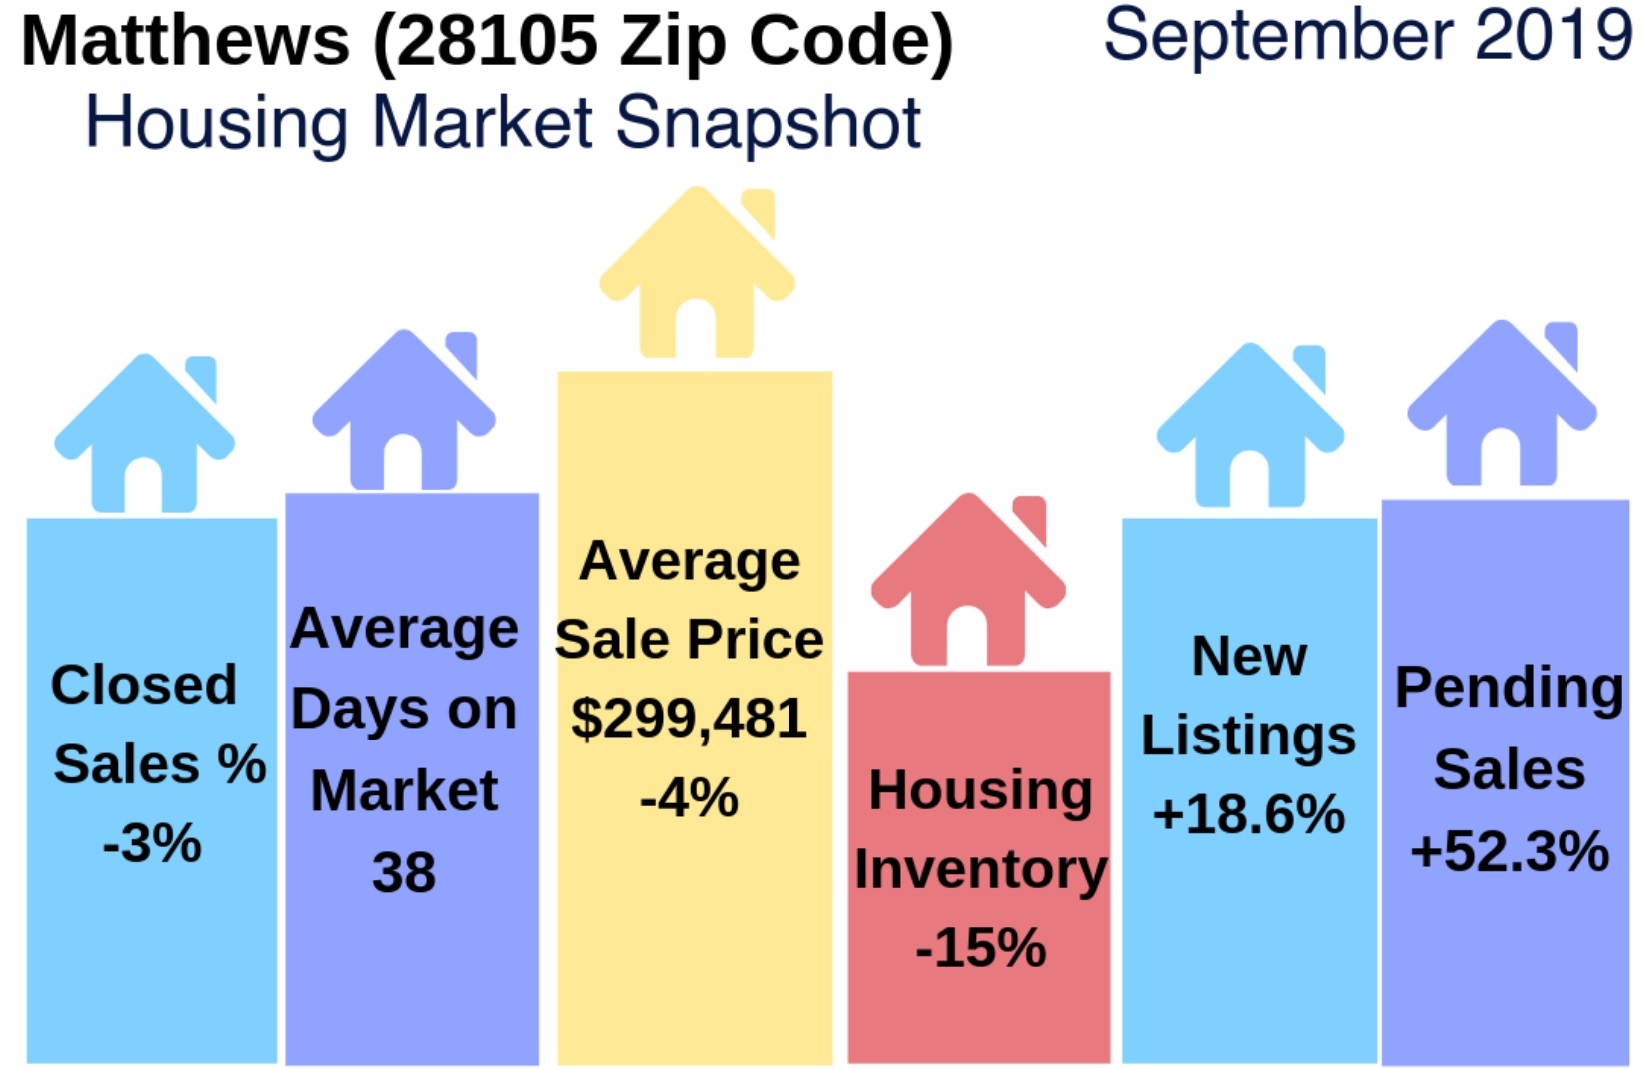 Matthews (28105 Zip Code) Real Estate Report: September 2019